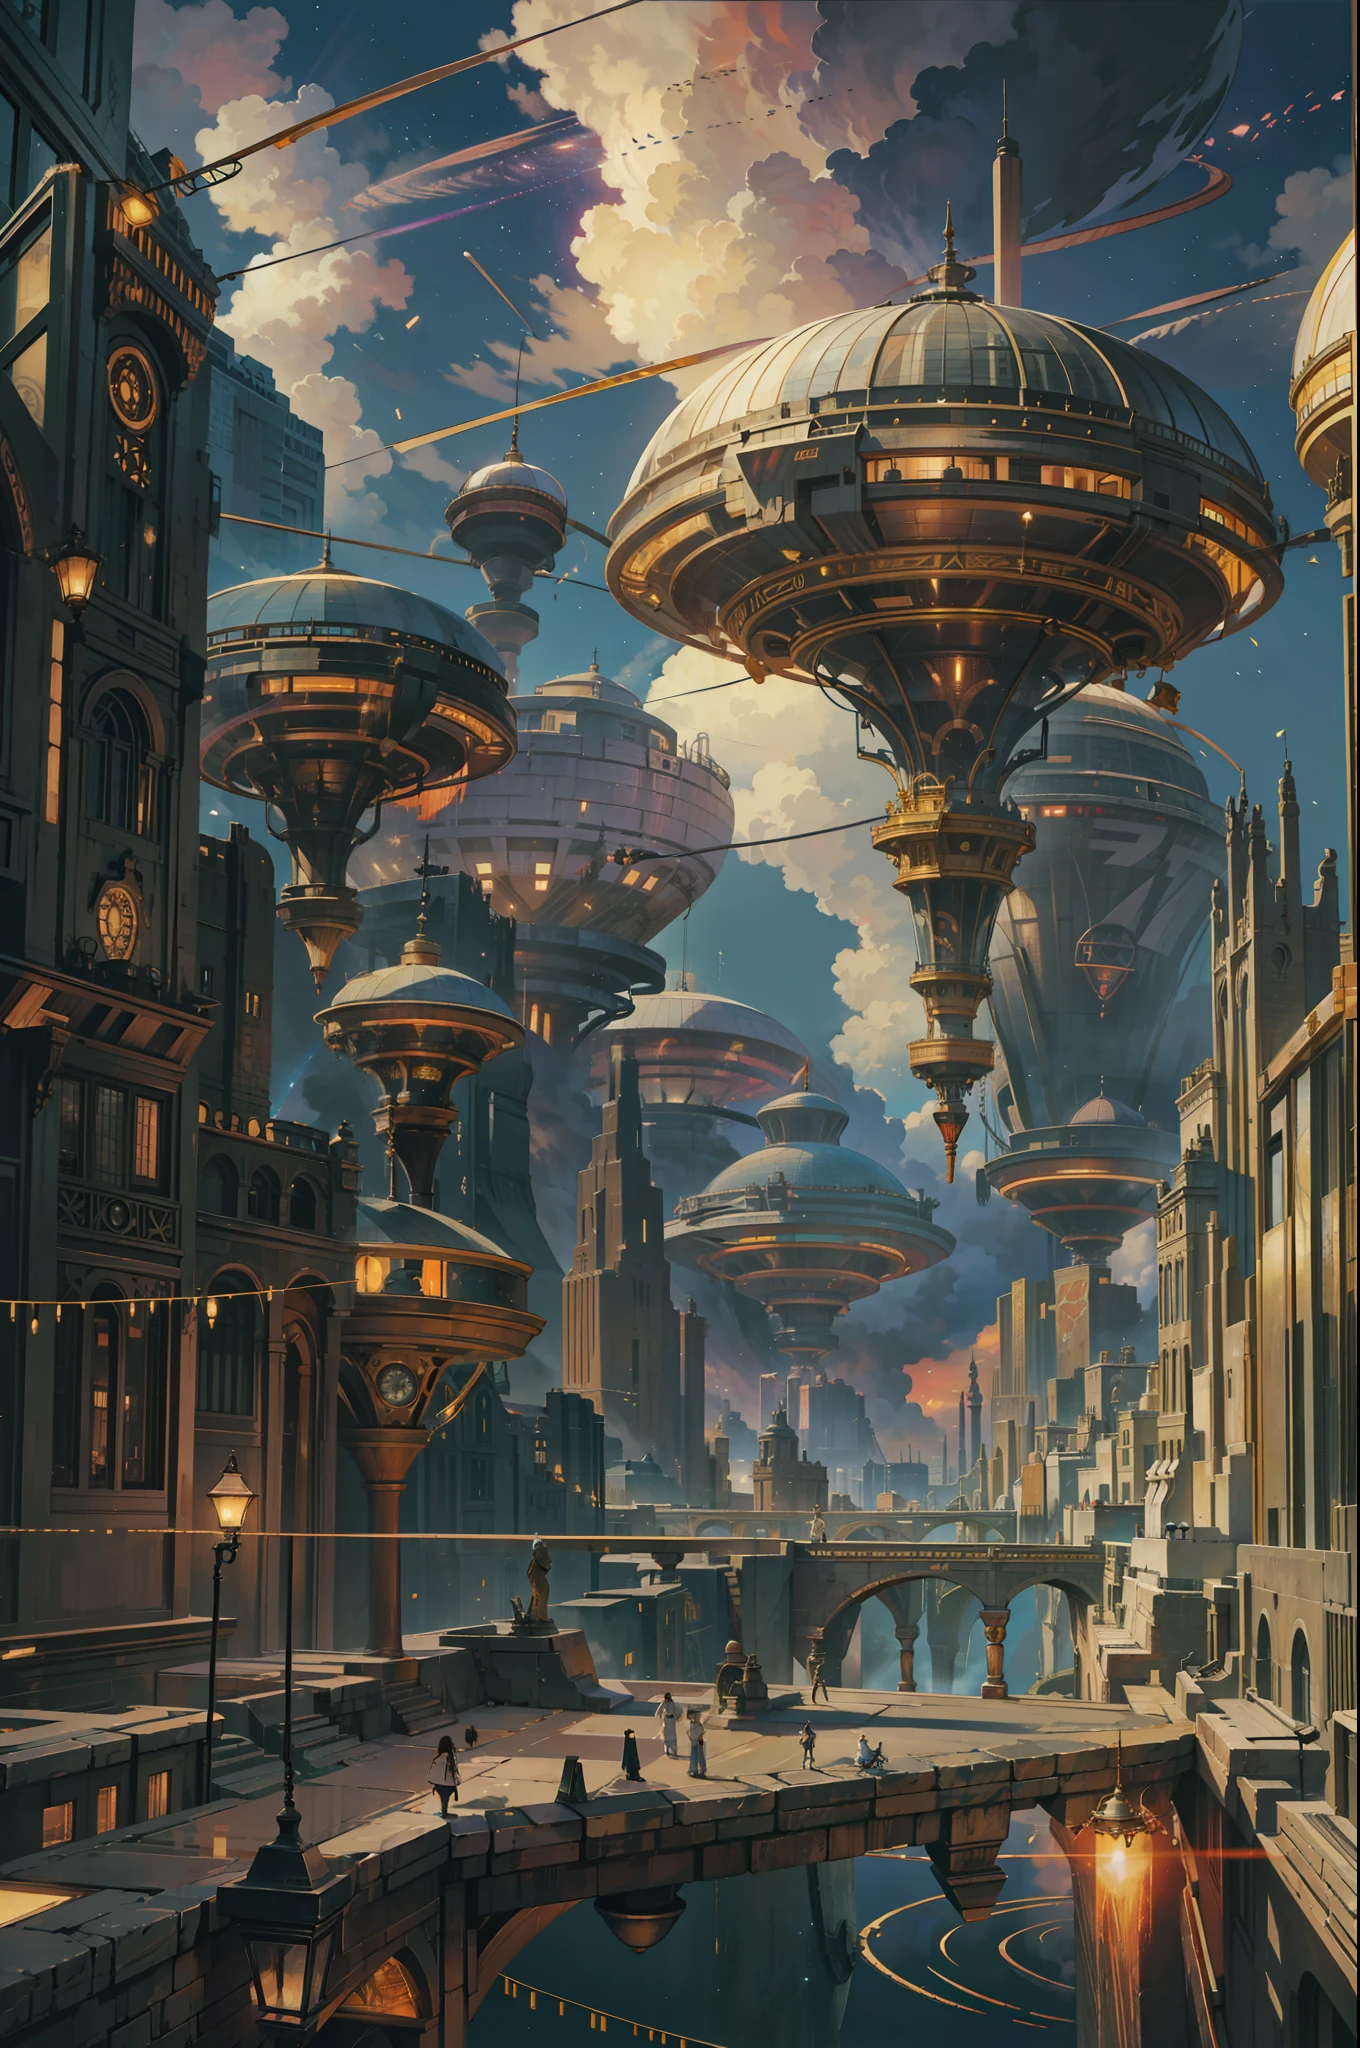 Ultraweites Sichtfeld，（schwebend：1.5），（Eine riesige Steampunk-Stadt mit zwei Ringen, die im Weltraum schwebt：1.3），（Erleuchten Sie die futuristische Steampunk-Stadt：1.4），（Dicke Wolken：1.4），（Stil von Makoto Shinkai：1.4），Jubeln，perfekte Qualität，Klarer Fokus（Unordnung - Zuhause：0.8）， （Meisterstück：1.2）， （realistisch：1.2） ，（mit Licht leuchten：1.2）， （beste Qualität）， （detaillierter Sternenhimmel：1.3） ，（komplexe Details）， （8K）， （Detail Meteor） ，（scharfer Fokus），（Spaß haben），（Preisgekrönte digitale Kunstwerke：1.3） af （Skizzierung：1.3），（mit Dynamik：1.3）,Studiolicht,Theme，Blick von oben, der Raum, über Wasser， --um 6